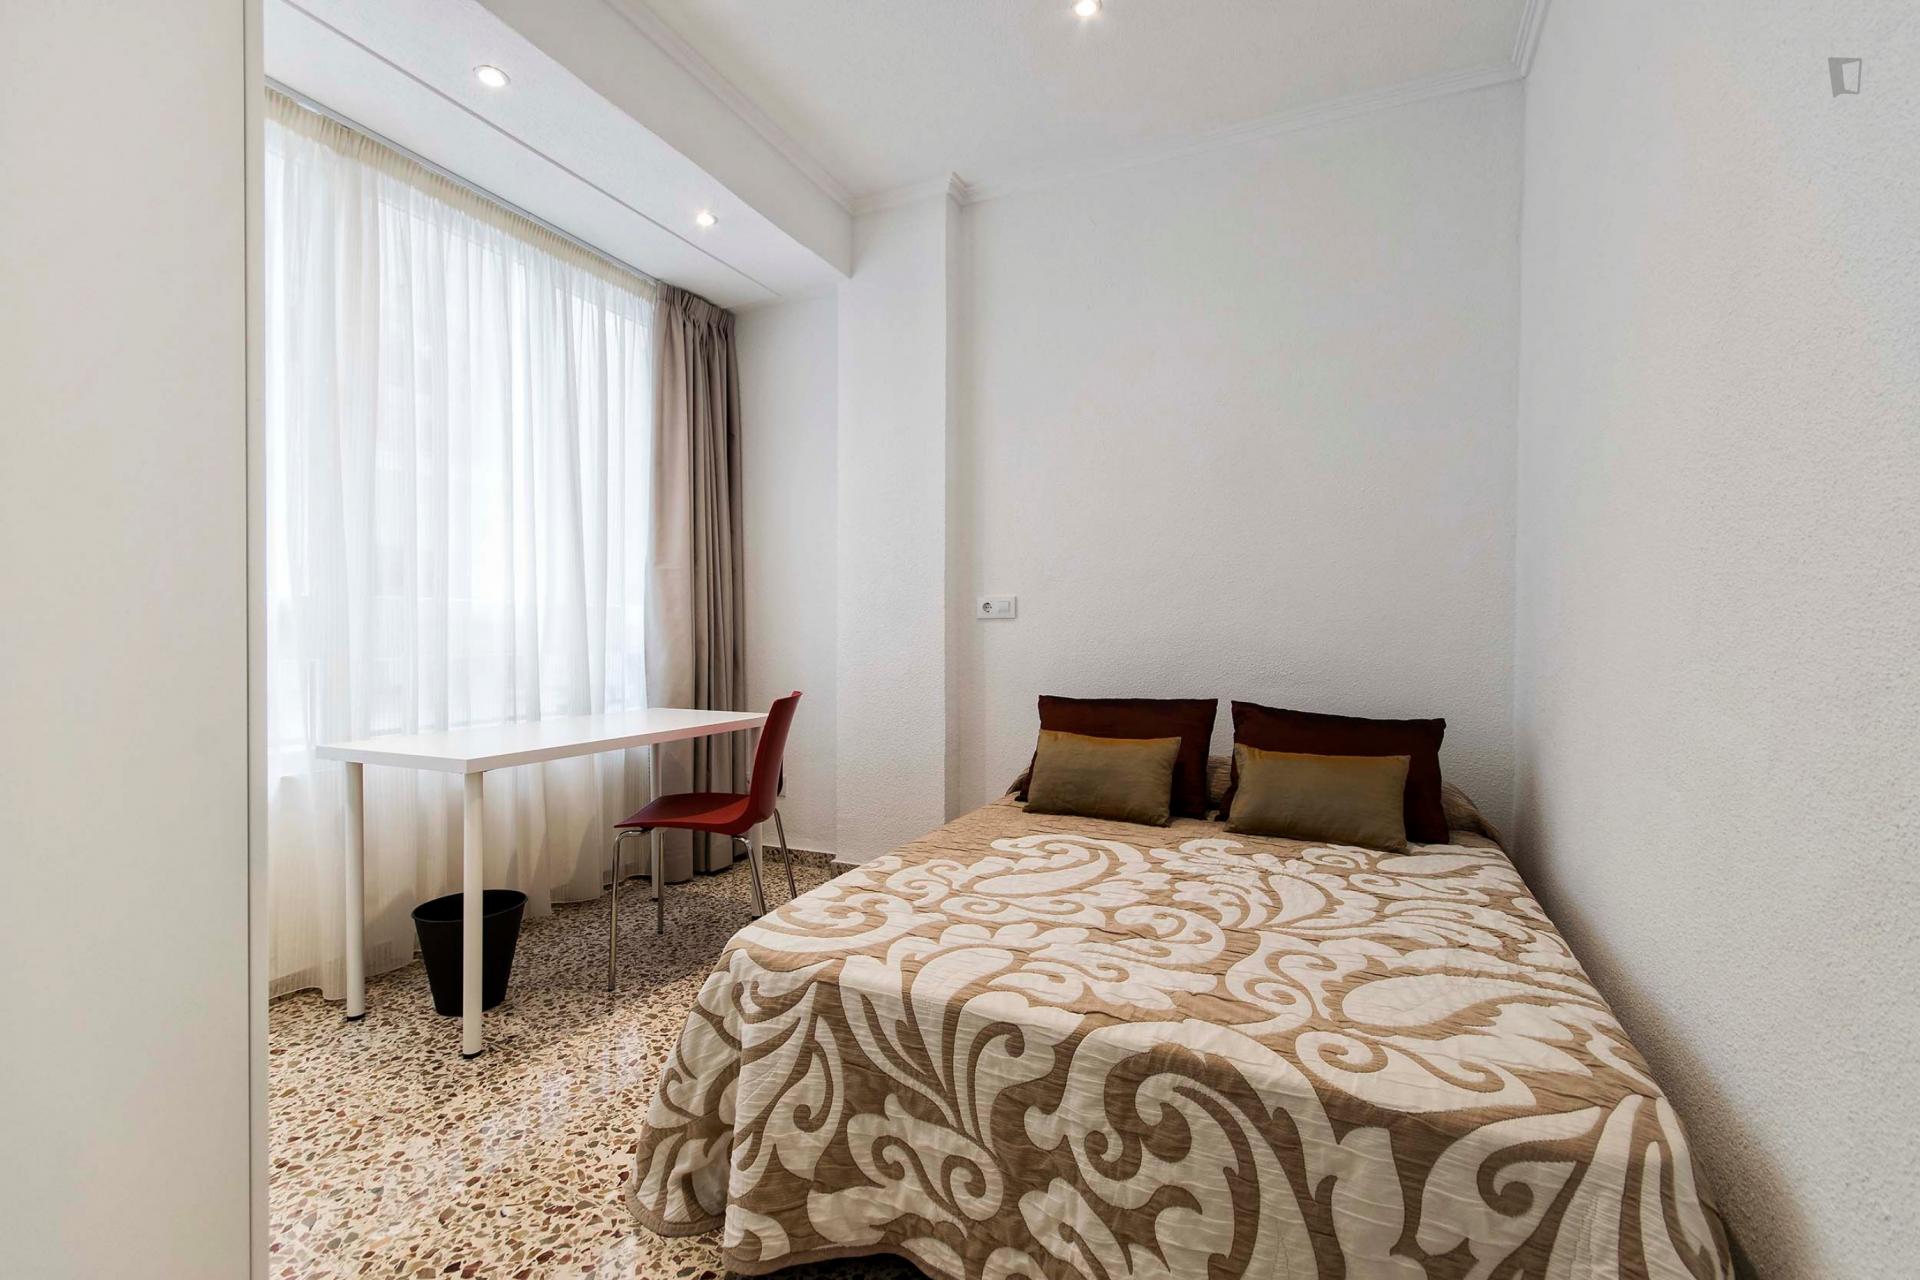 Alicante room - Cool double bedroom in Alicante city center